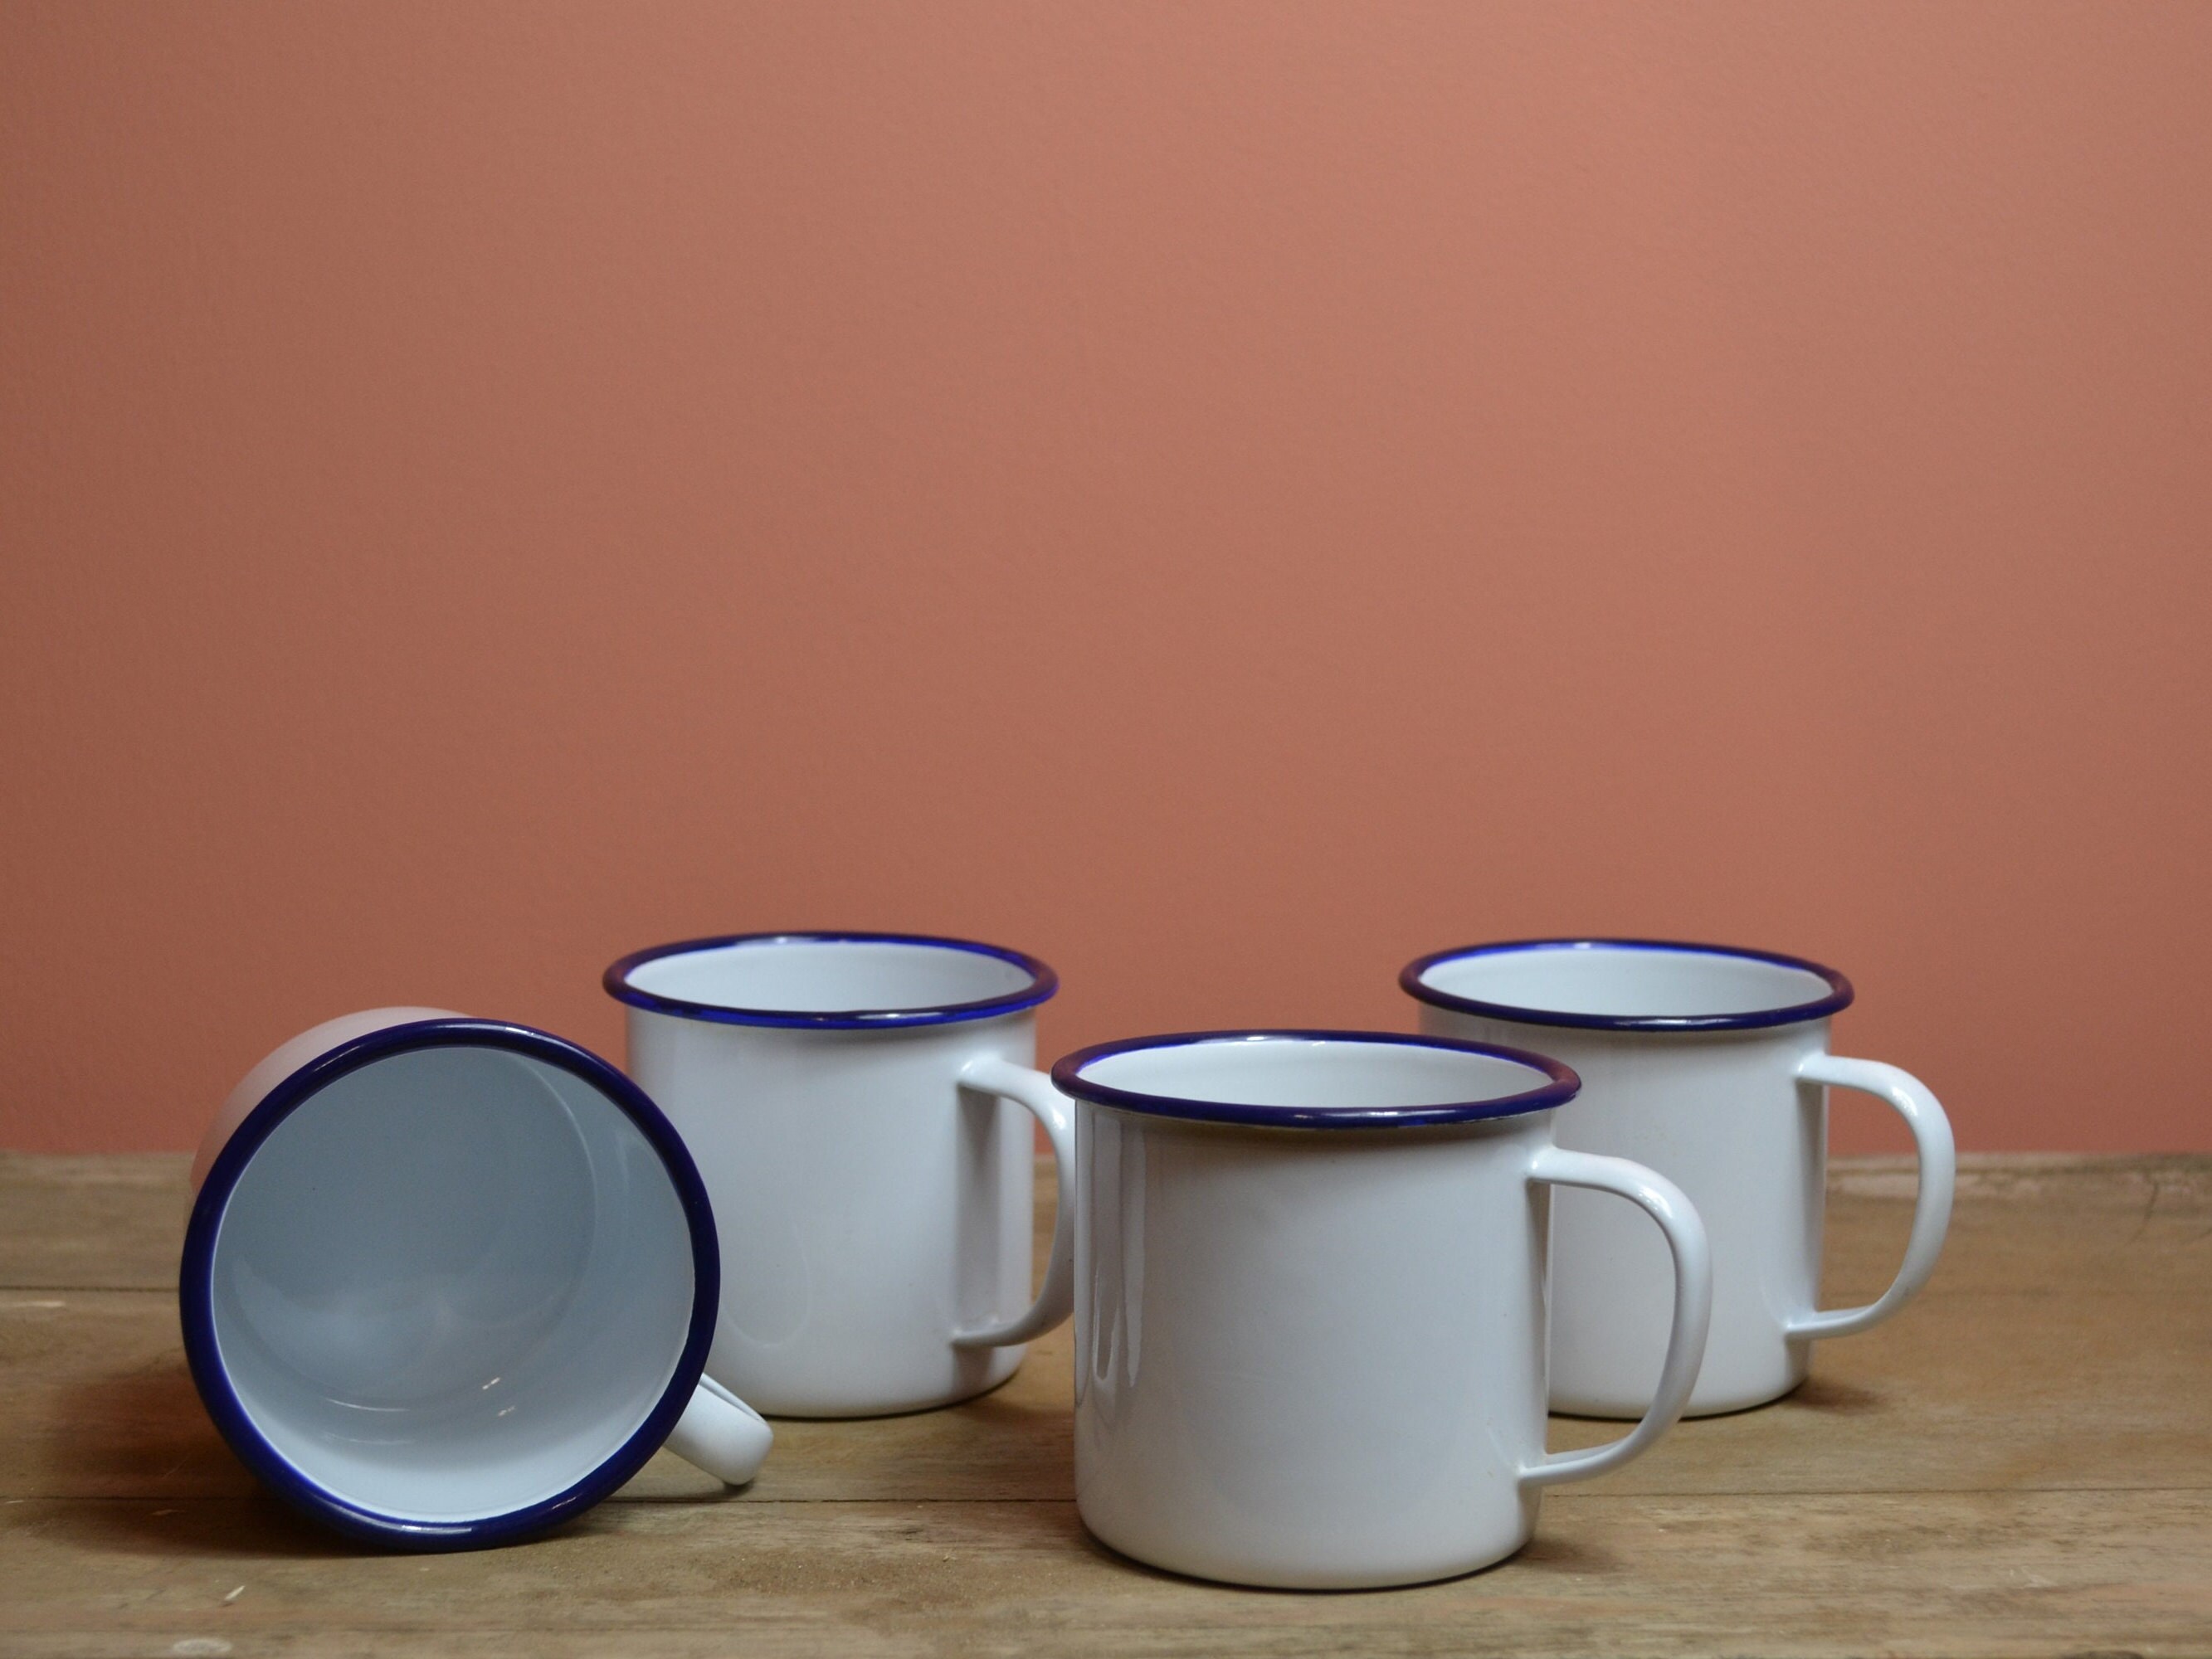 Lot de 4 Tasses Émaillées Vintage/ Mugs Émaillés Blanc et Liseré Bleu Marine/ à Thé/ Cafè/ Rustique 